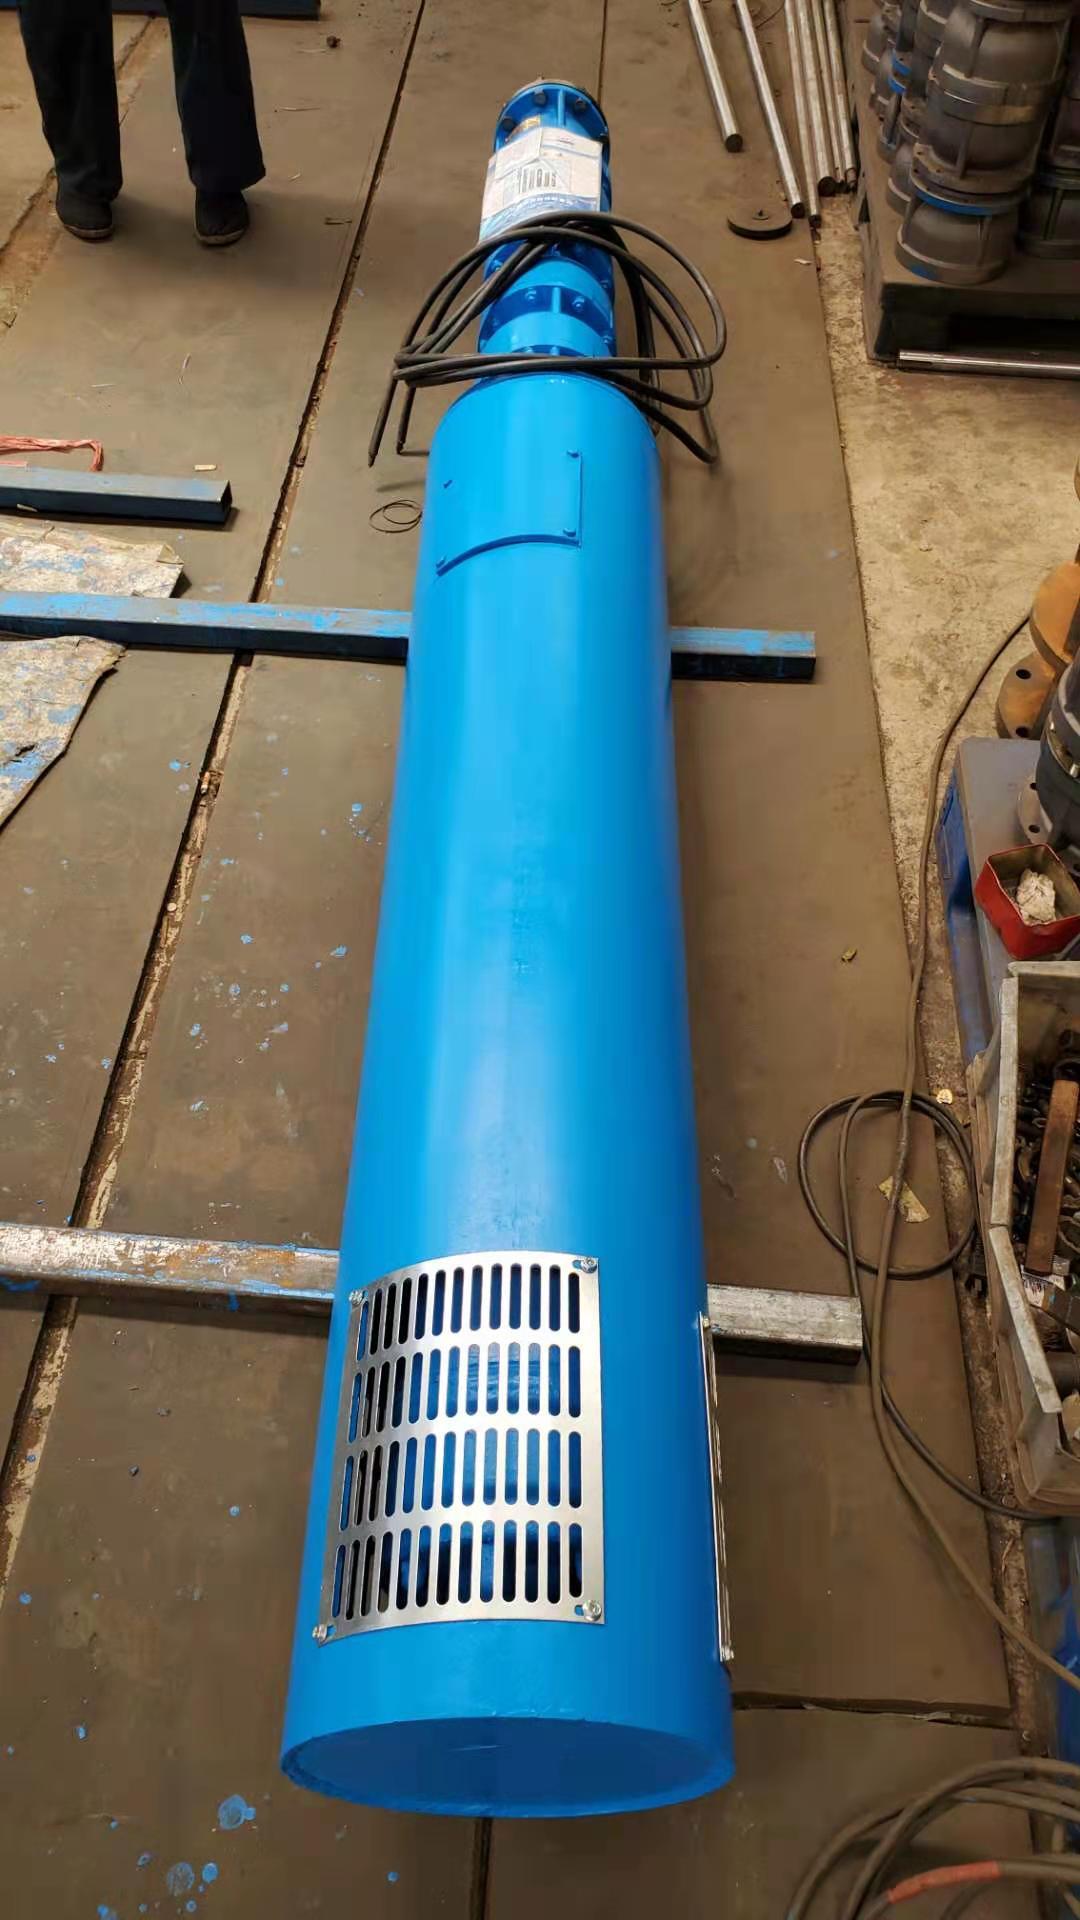 天津高品质深井泵价格-井用潜水泵质量